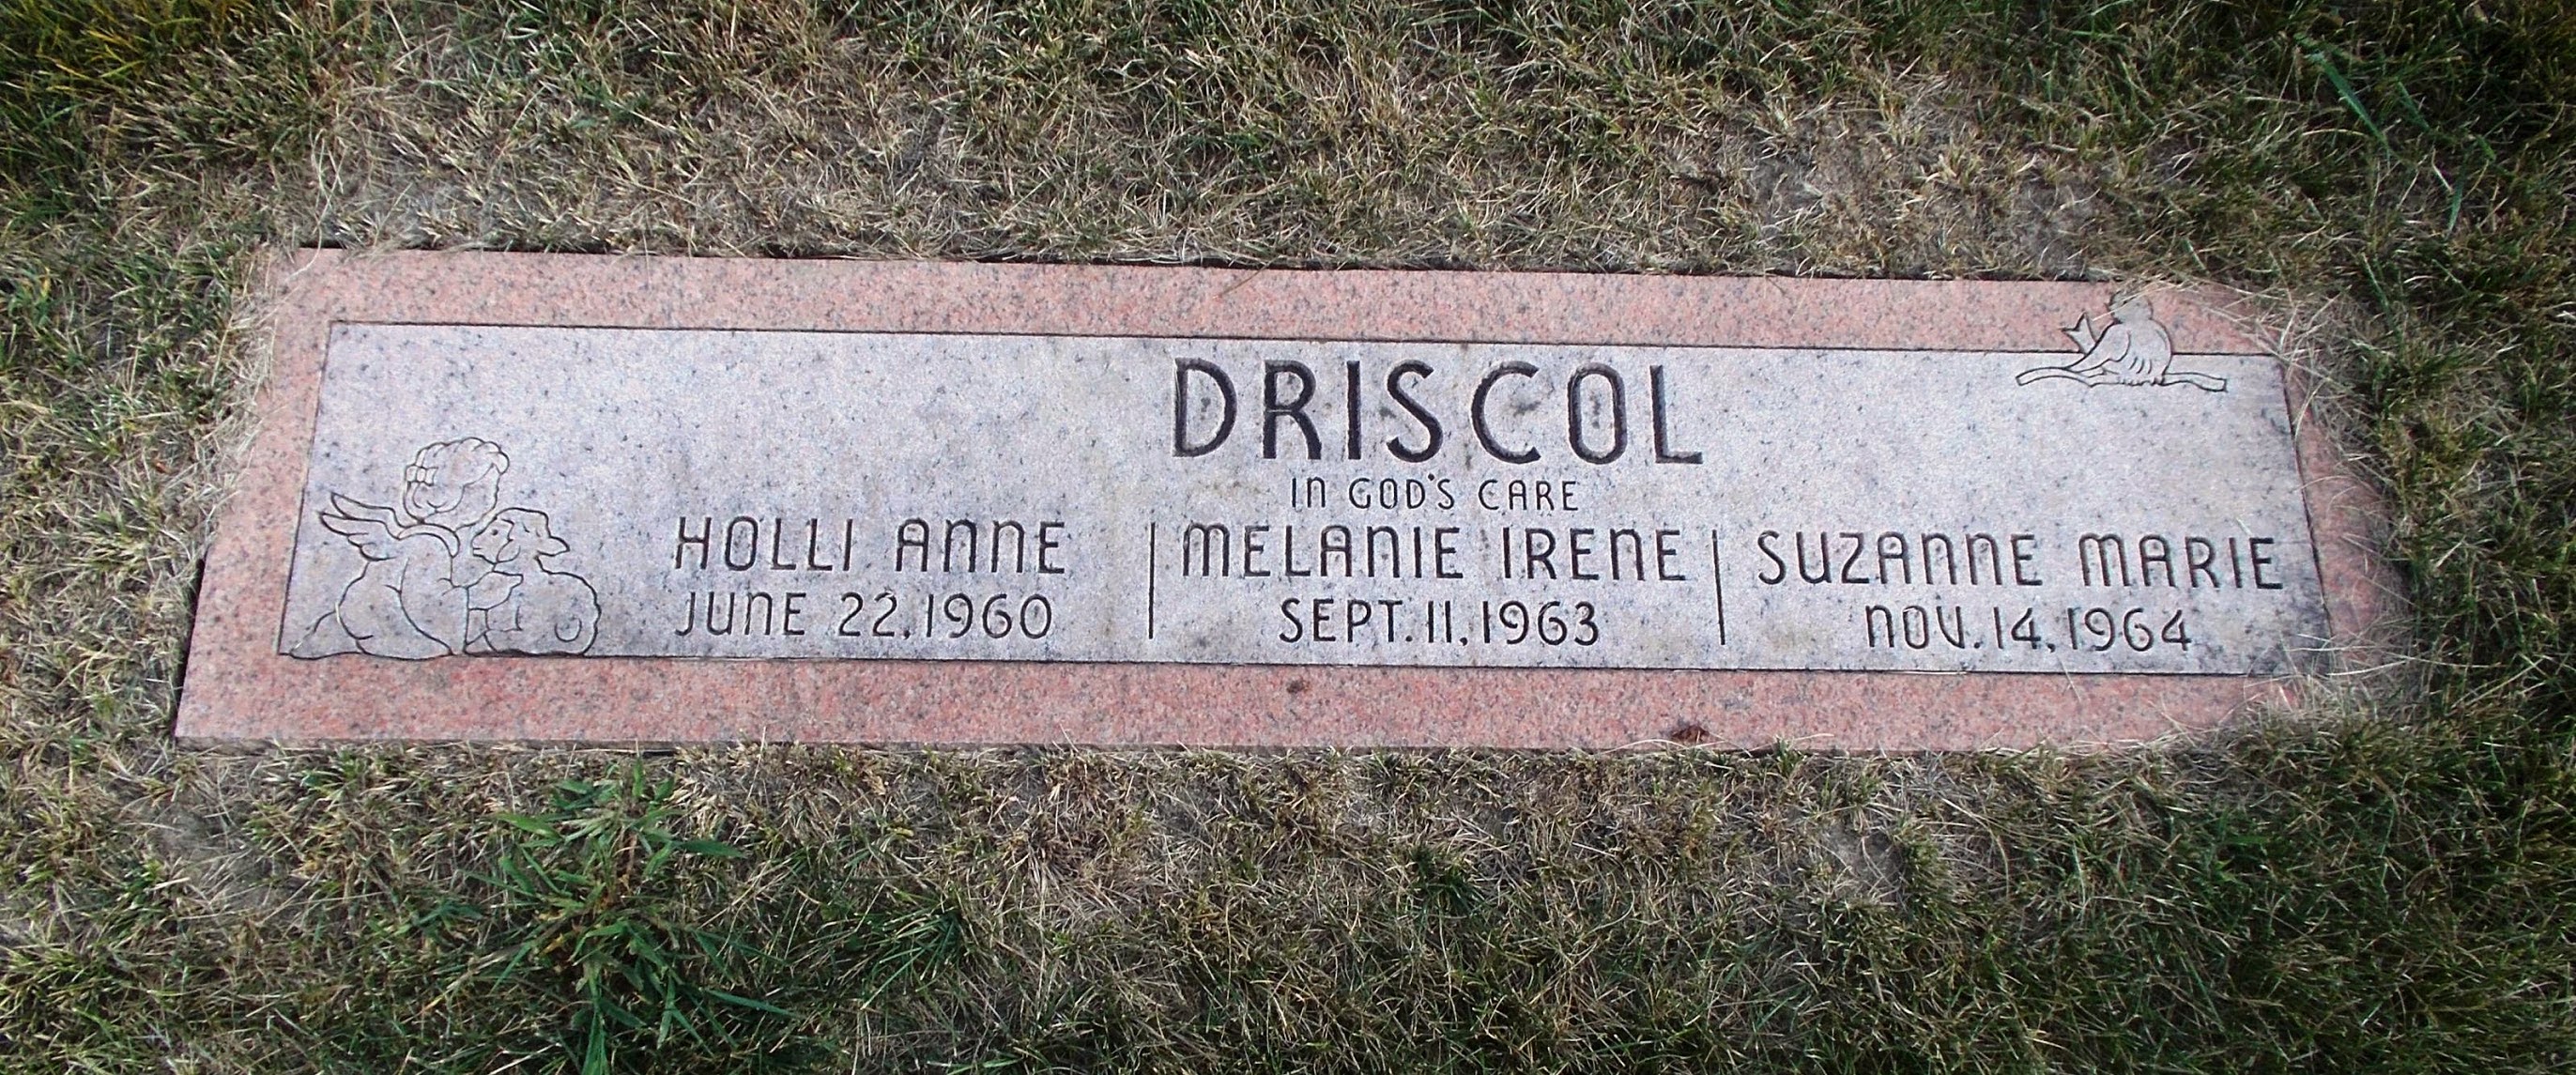 Suzanne Marie Driscol